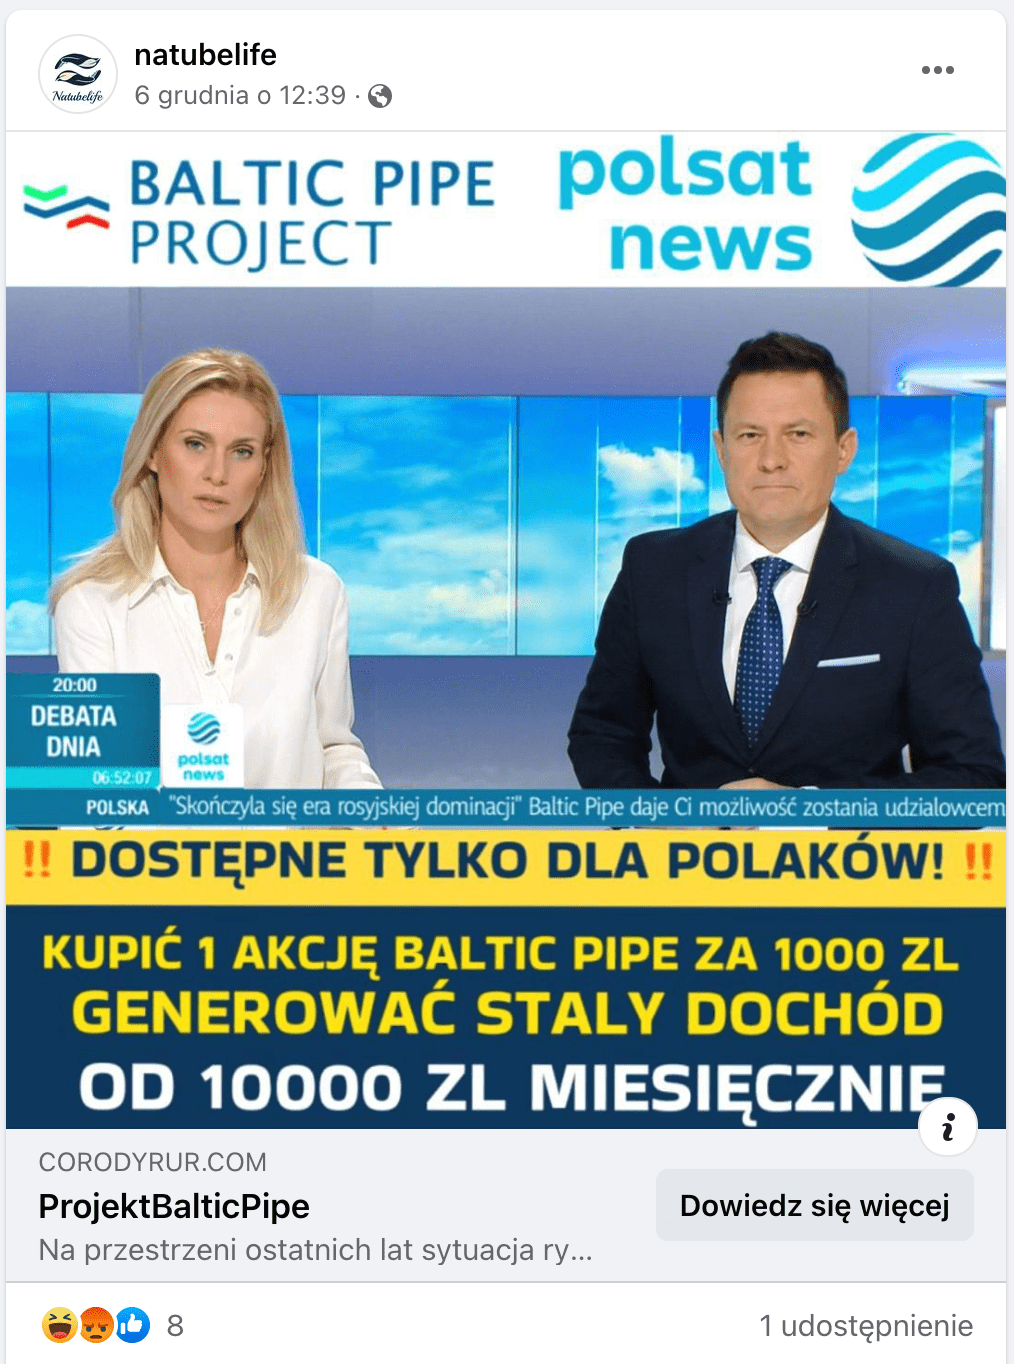 Zrzut ekranu omawianego posta na Facebooku. W kadrze są dziennikarze Polsatu News: kobieta w białej koszuli oraz mężczyzna w ciemnogranatowym garniturze i niebieskim krawacie w białe kropki. Poniżej znajduje się pasek z informacjami. 